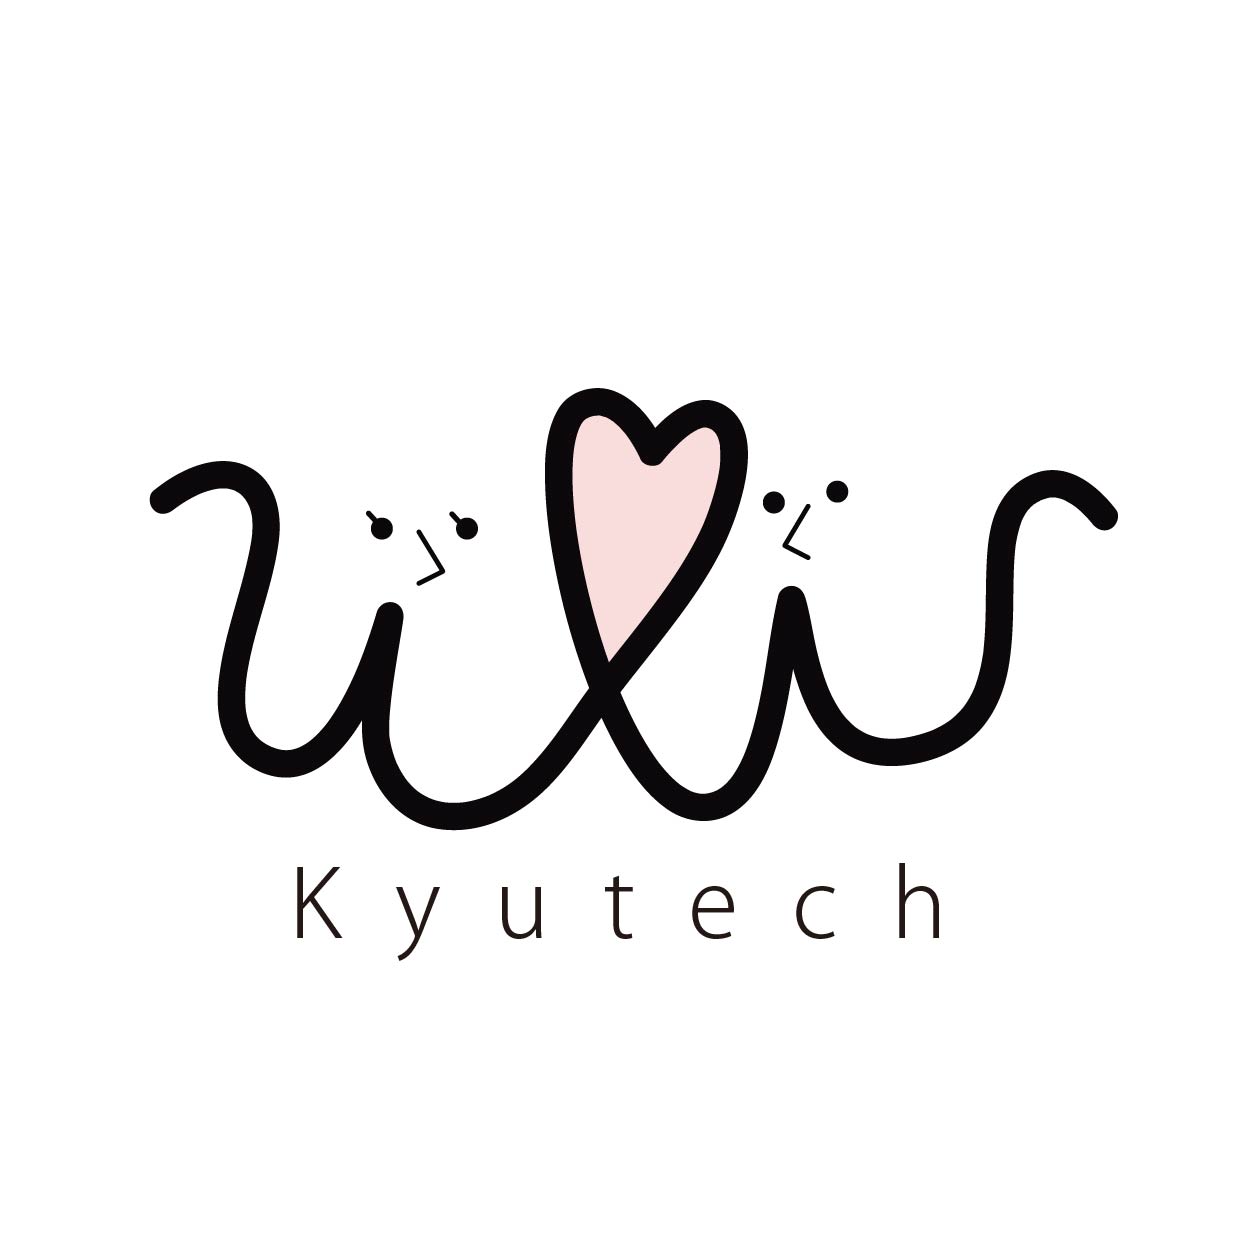 W for W Kyutech